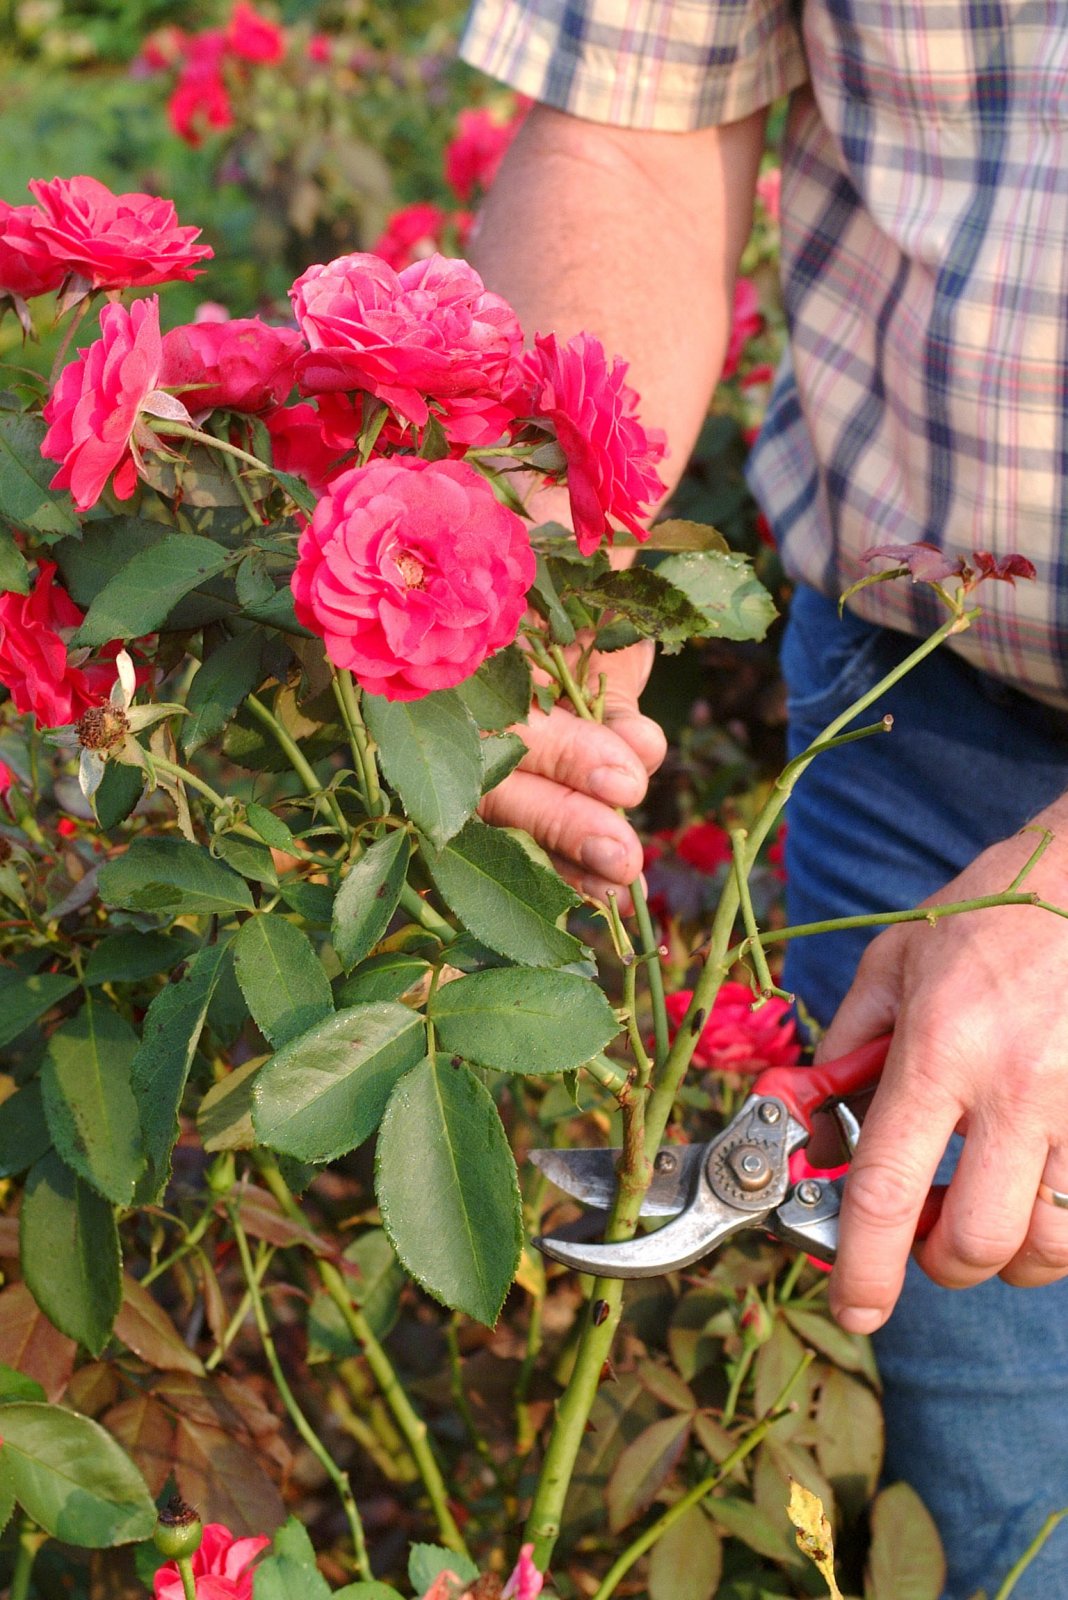 Особенности обрезки плетистых роз на зиму